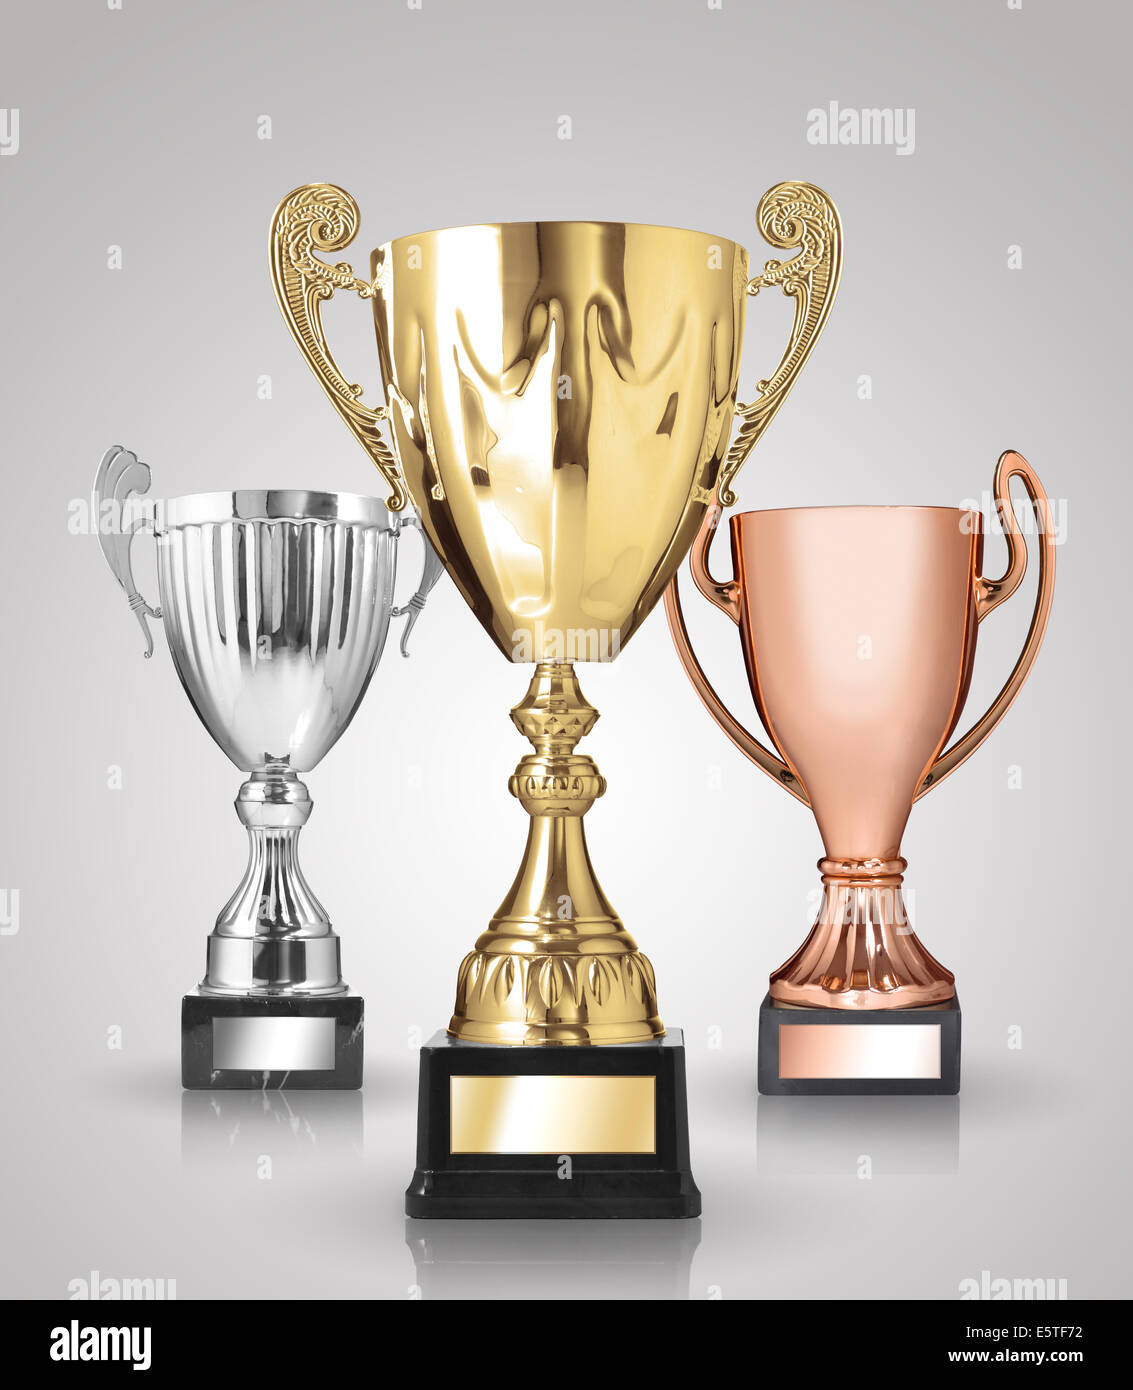 Trophées de champion sur fond gris Photo Stock - Alamy